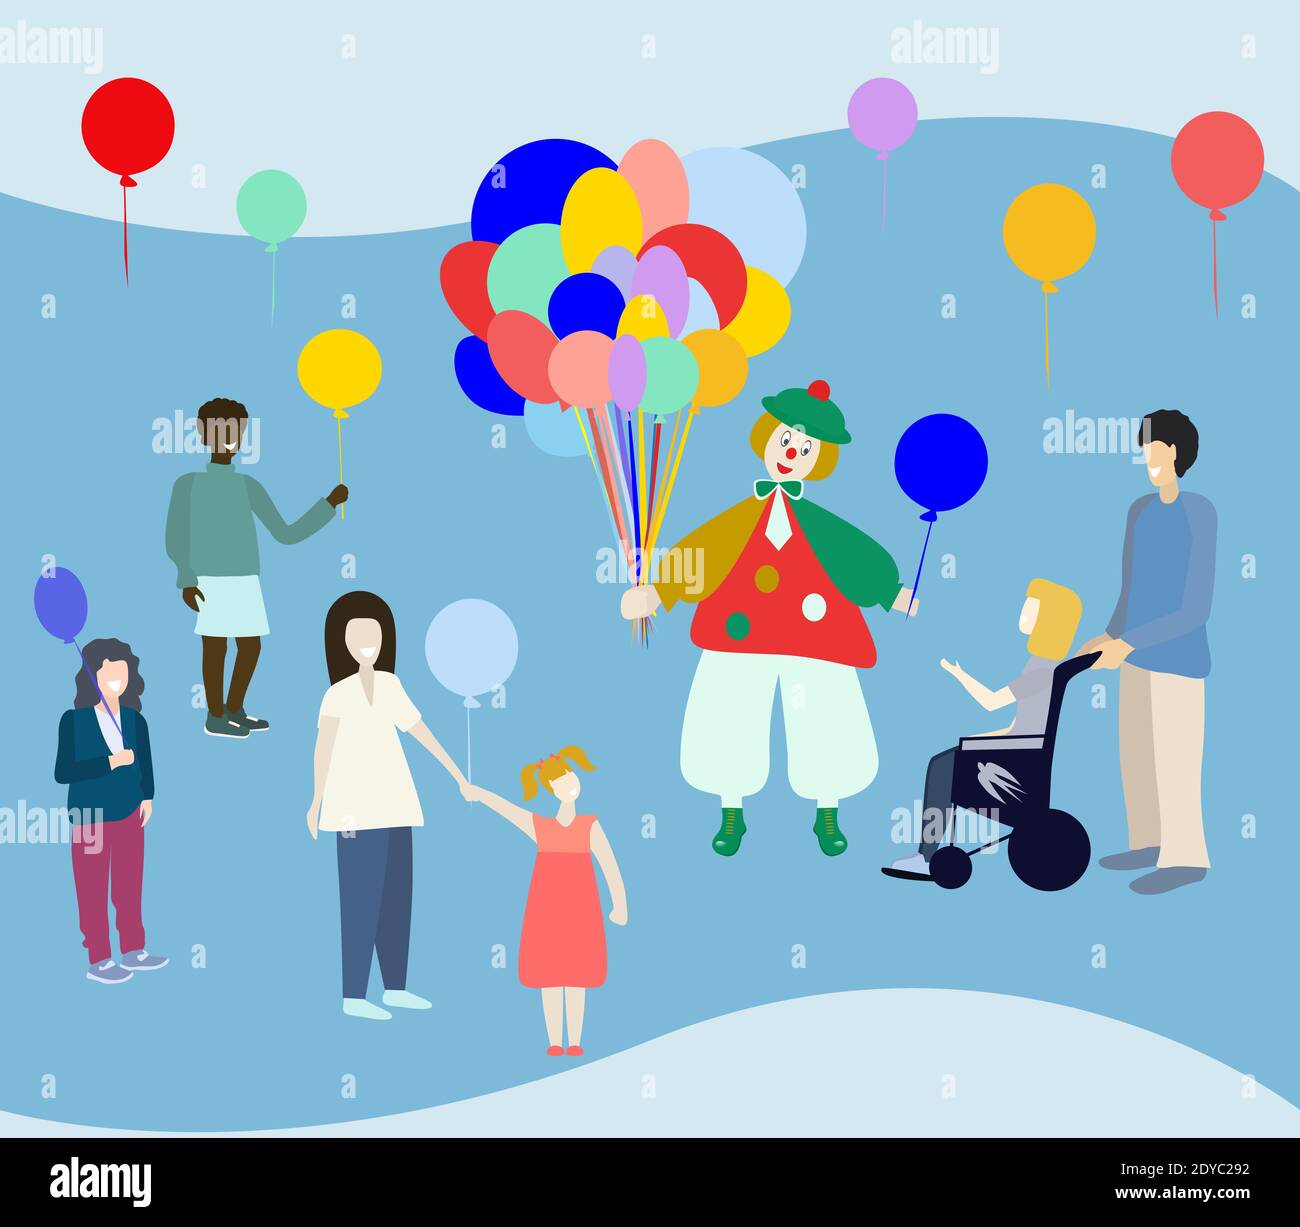 Zufällige Handlungen der Güte Tag. Clown gibt Luftballons für Kinder. Vektorgrafik. Stock Vektor